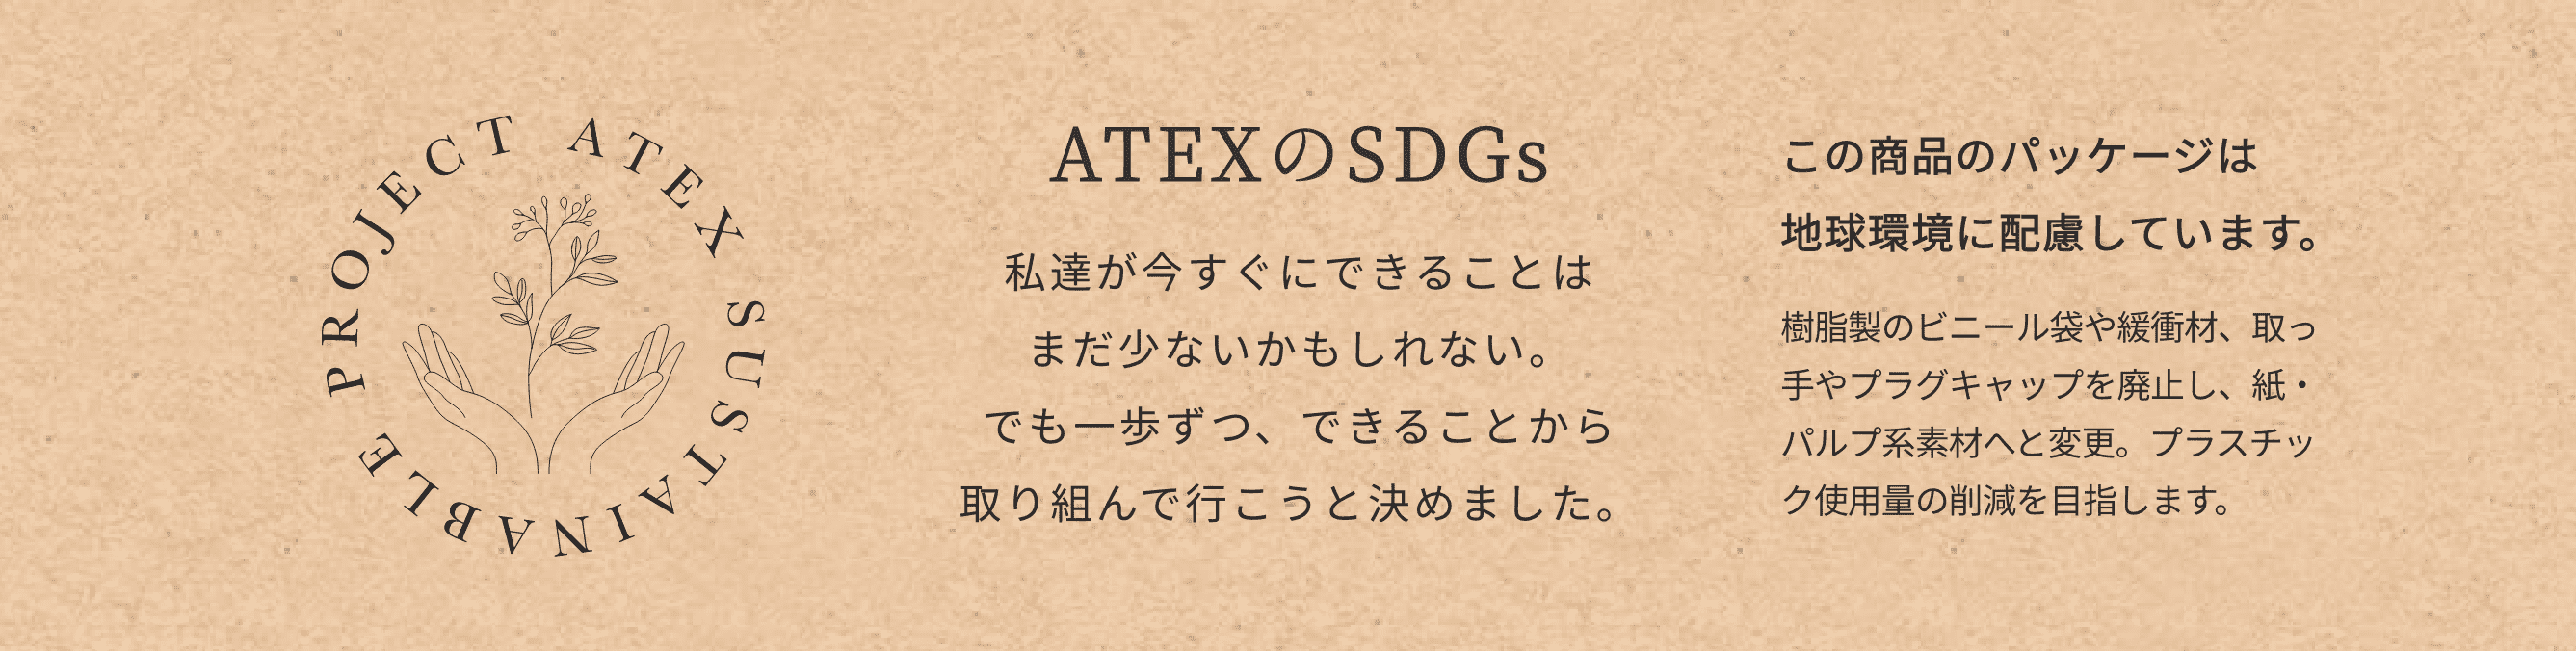 ATEXのSDGs